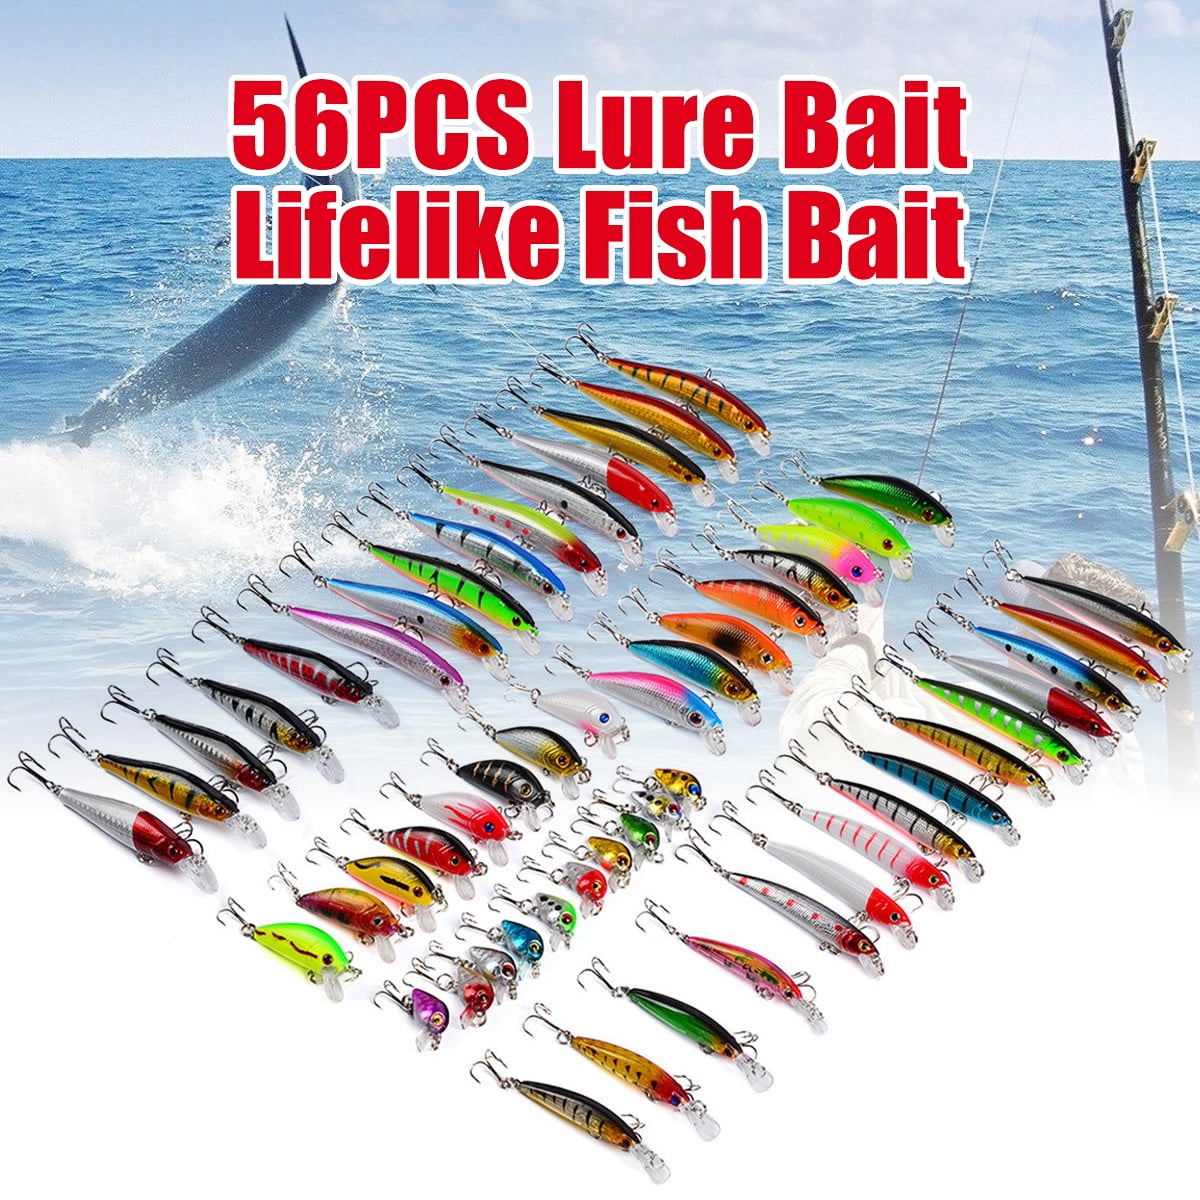 Lot 56PCS Fishing Lures Set Minnow Bait Kit Wobblers Crankbait Tackle Hook Bass